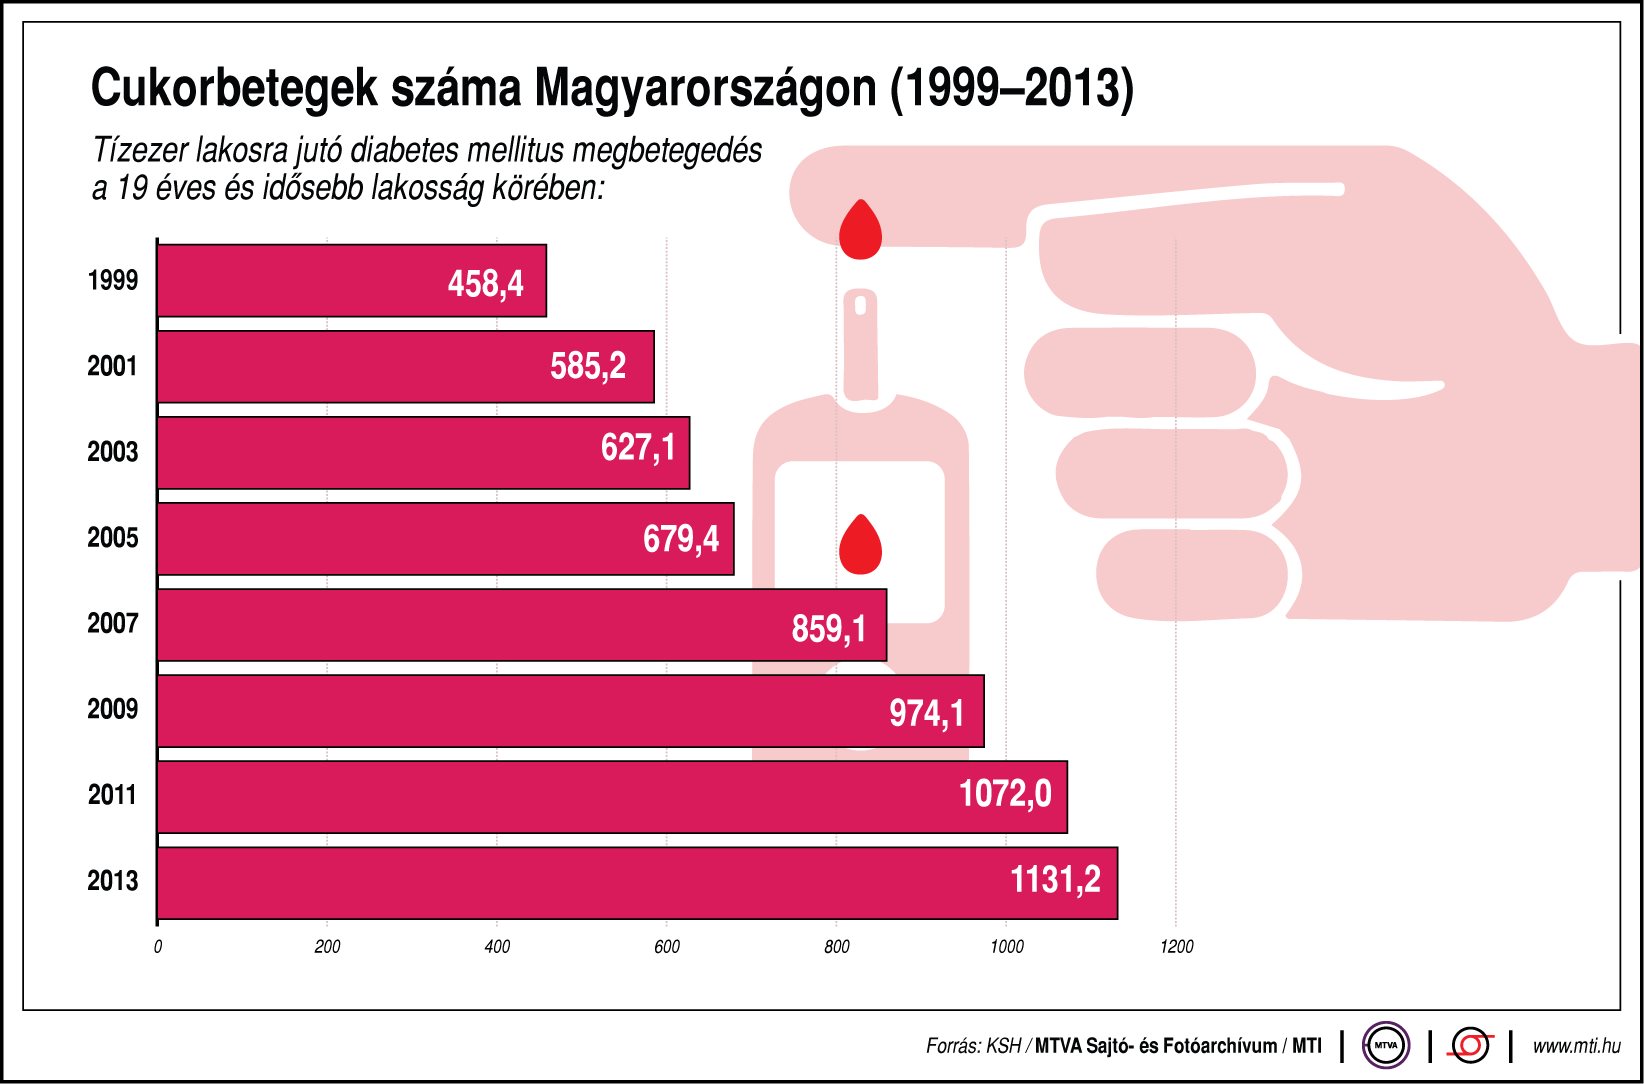 Magyarországon több mint egymillió cukorbeteg él, a számuk pedig egyre nő